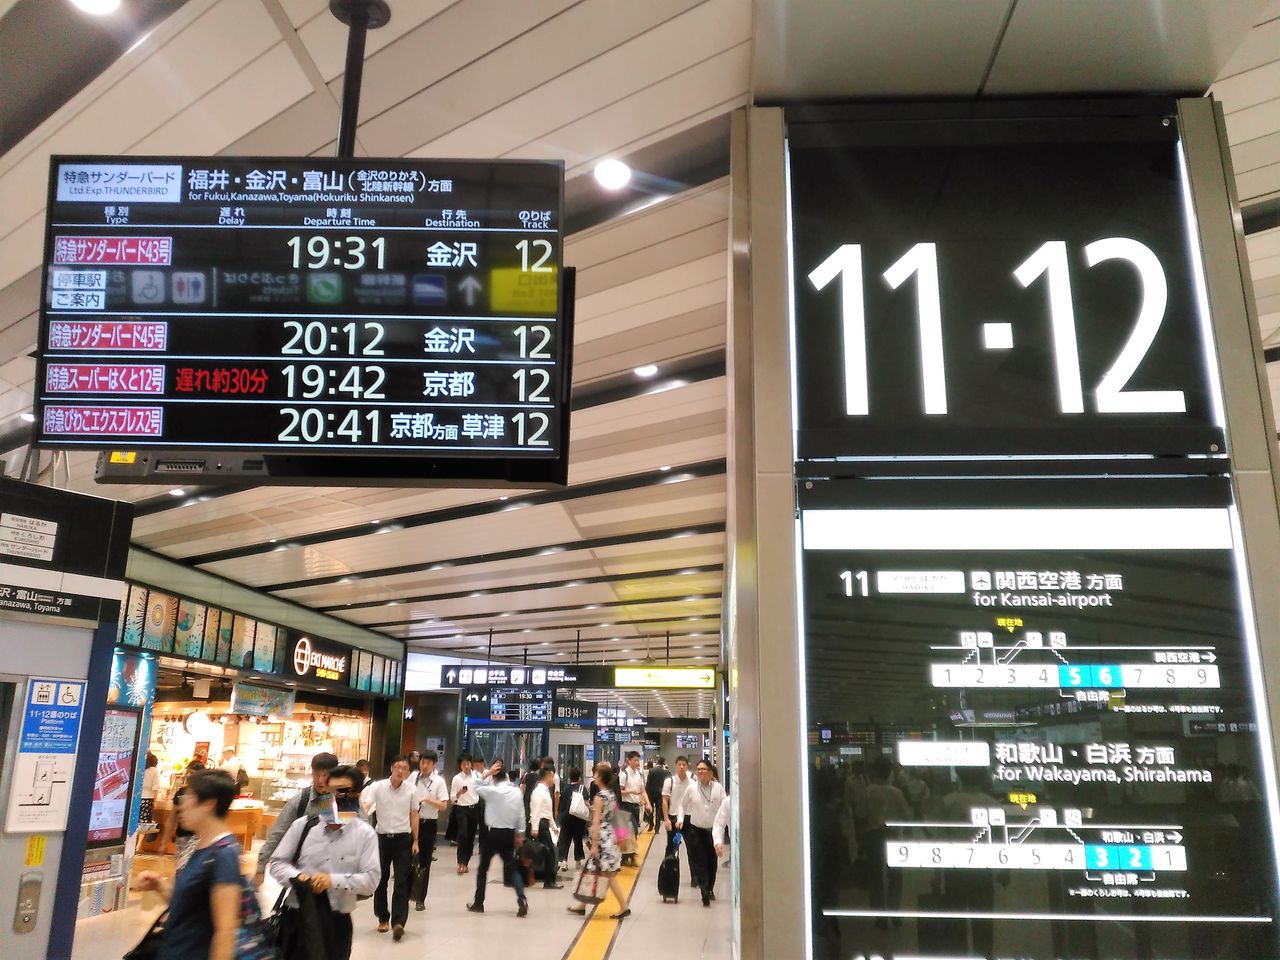 通勤利用もできる はるか50号 自由席に新大阪から近江八幡まで乗車してきました 通勤ライナーを抜本的拡充して 圧倒的多くの乗客に快適通勤を